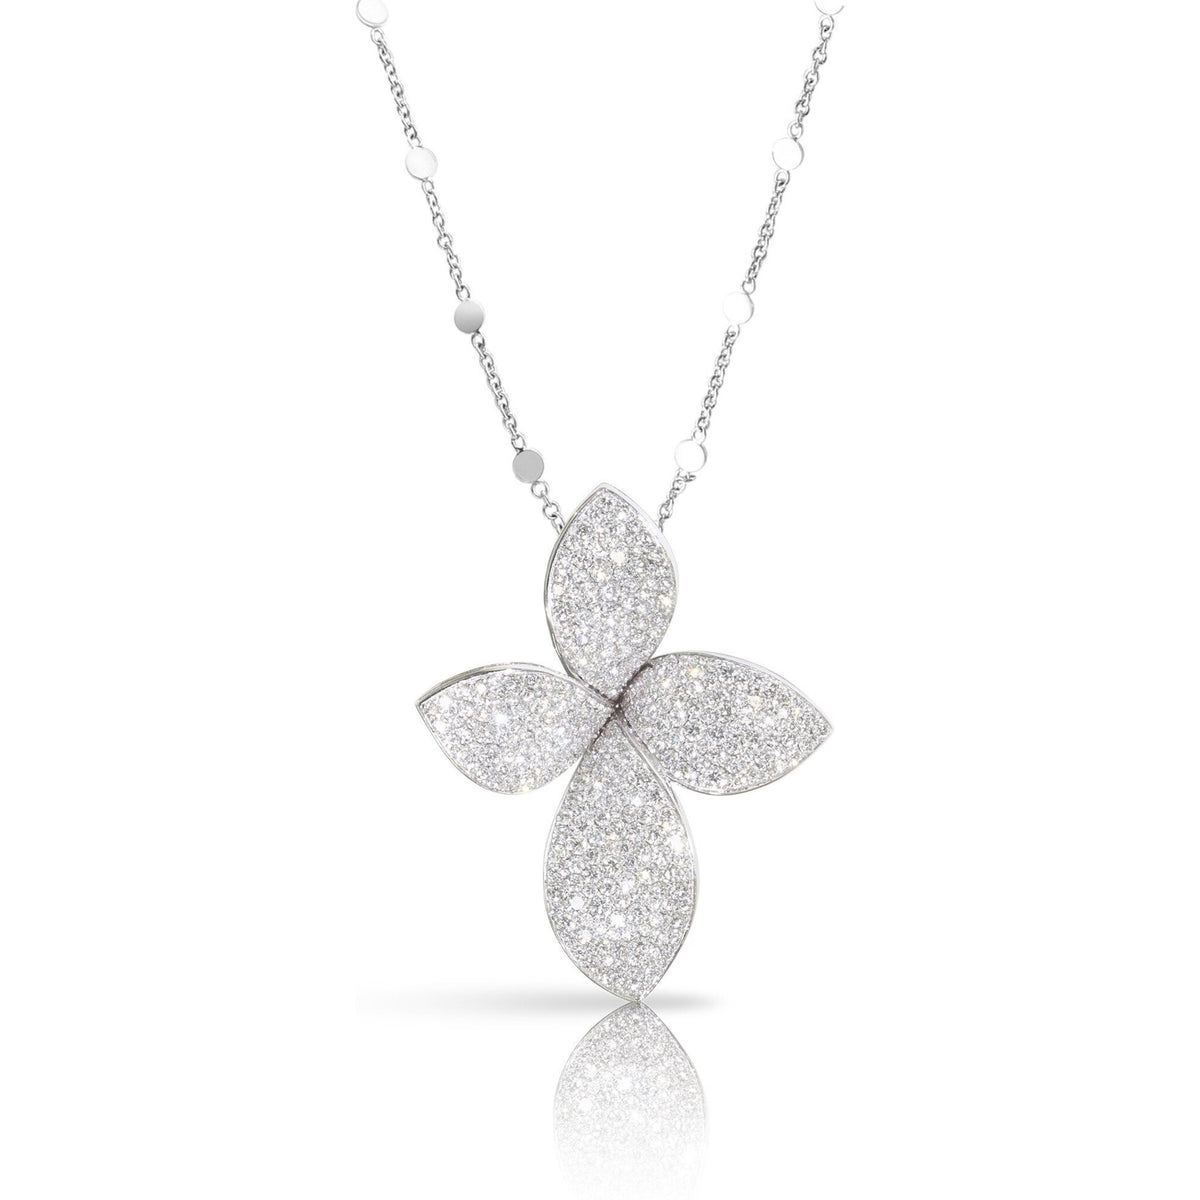 Pasquale Bruni - Giardini Segreti Small Flower Necklace in 18k White Gold with White Diamonds